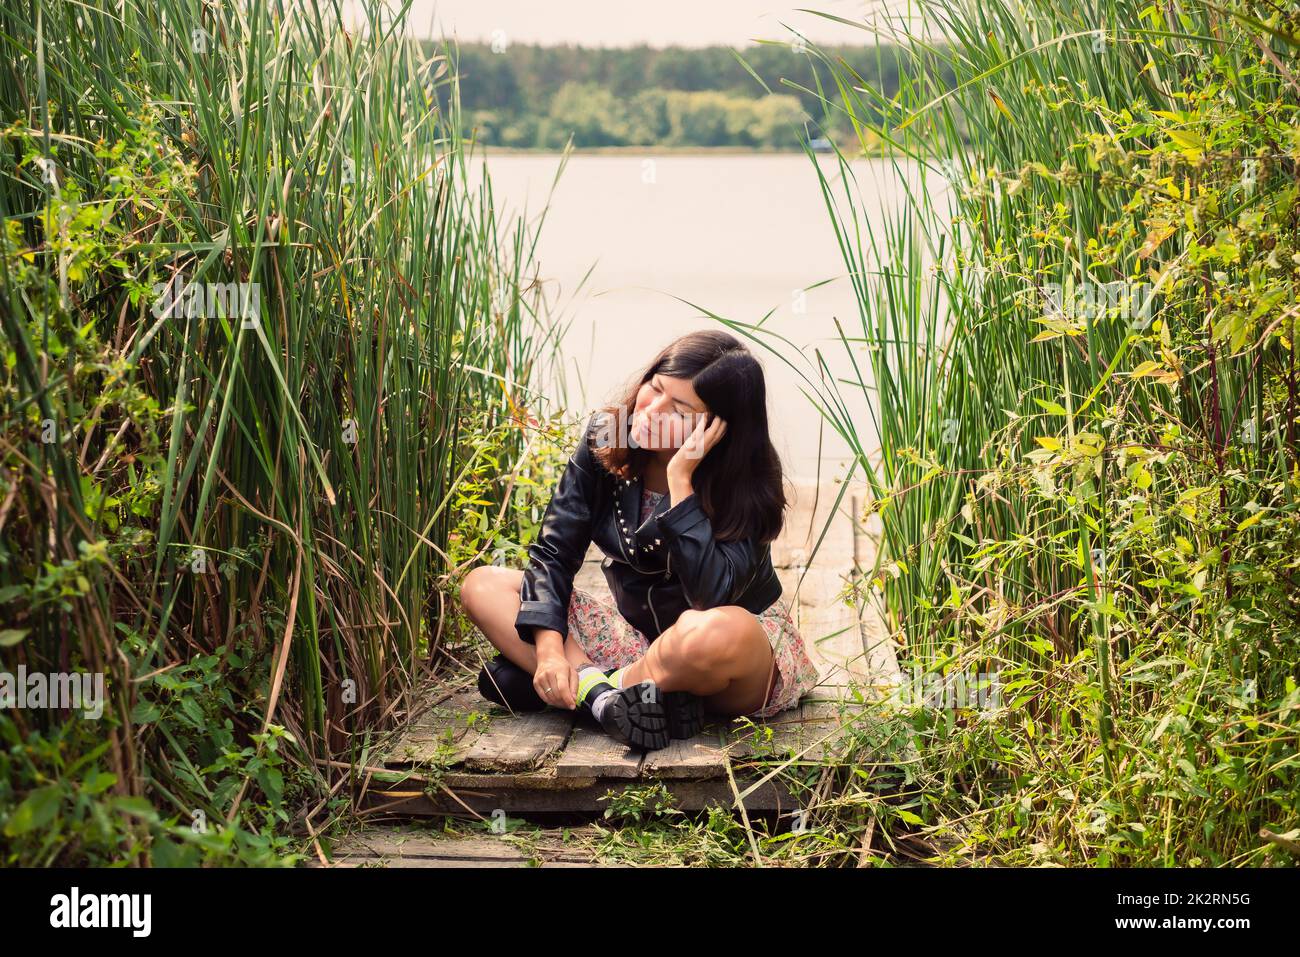 une fille brune dans une veste noire est assise sur un pont en bois sur la rive d'un étang, en la soutenant la tête vers le haut avec sa main Banque D'Images